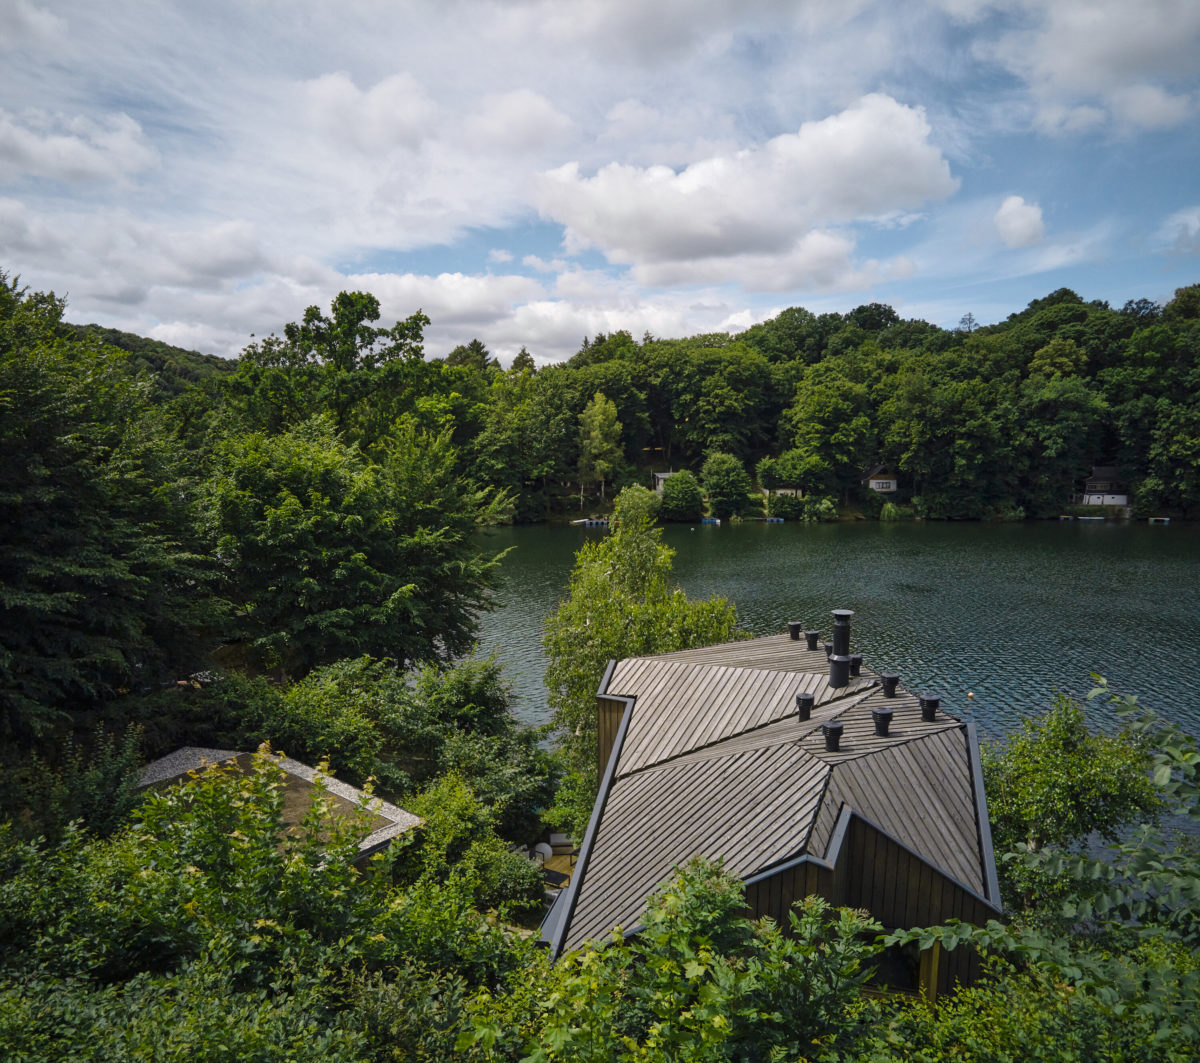 Moderní rekonstruovaná modřínová trojpodlažní chata u přehrady